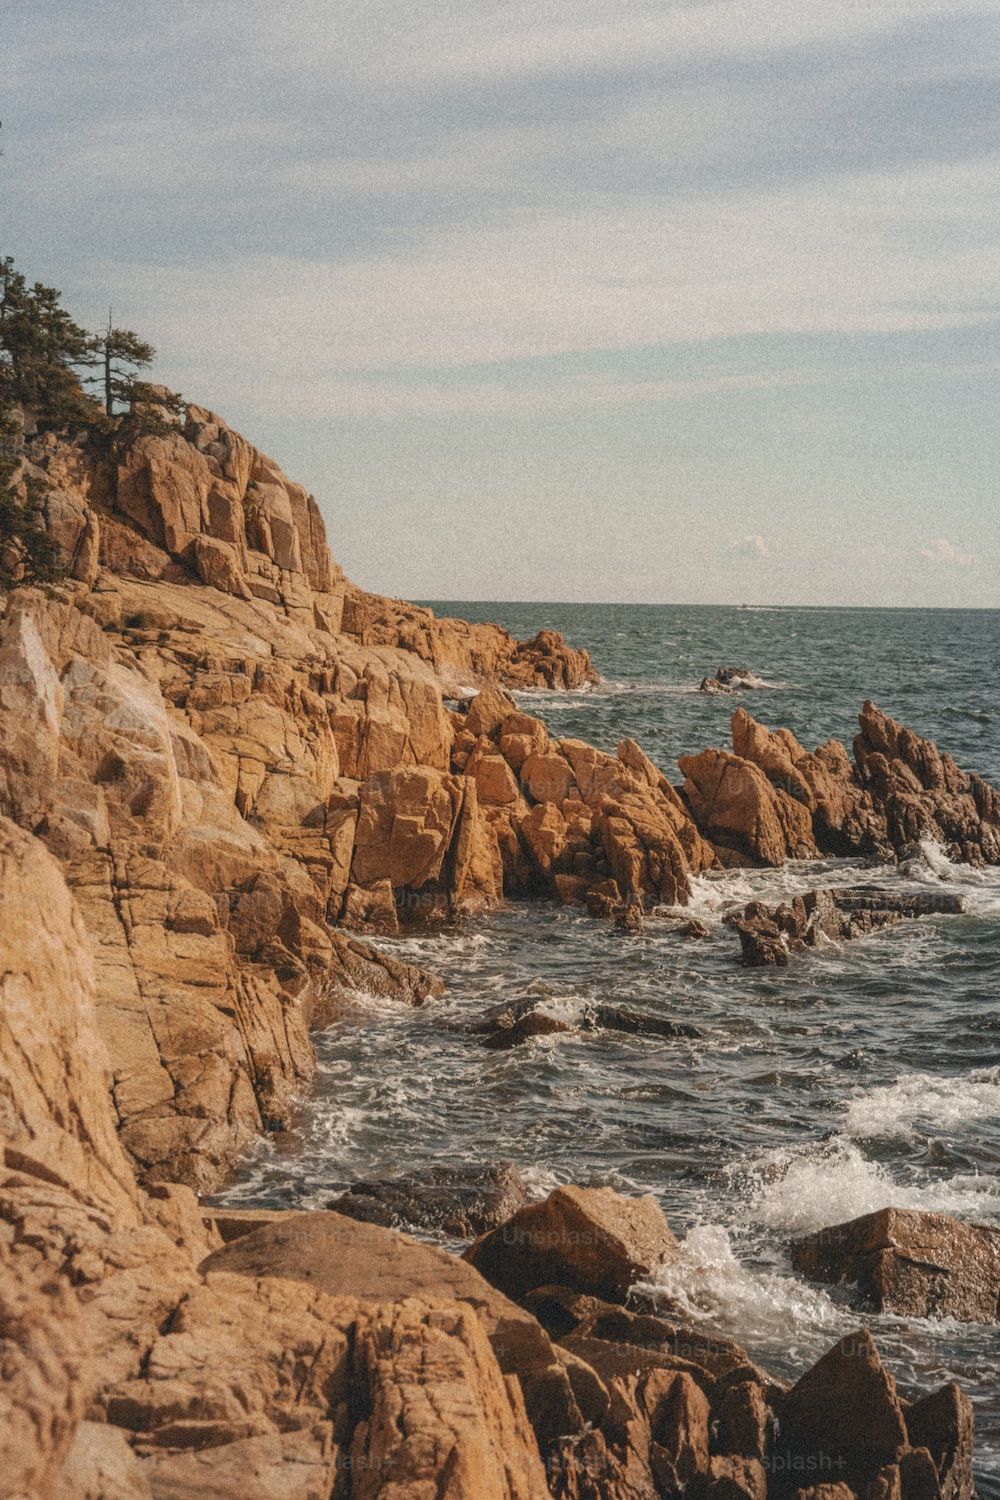  Fels Hintergrundbild 1000x1500. Foto zum Thema Ein felsiger strand mit wellen, die gegen ihn prallen